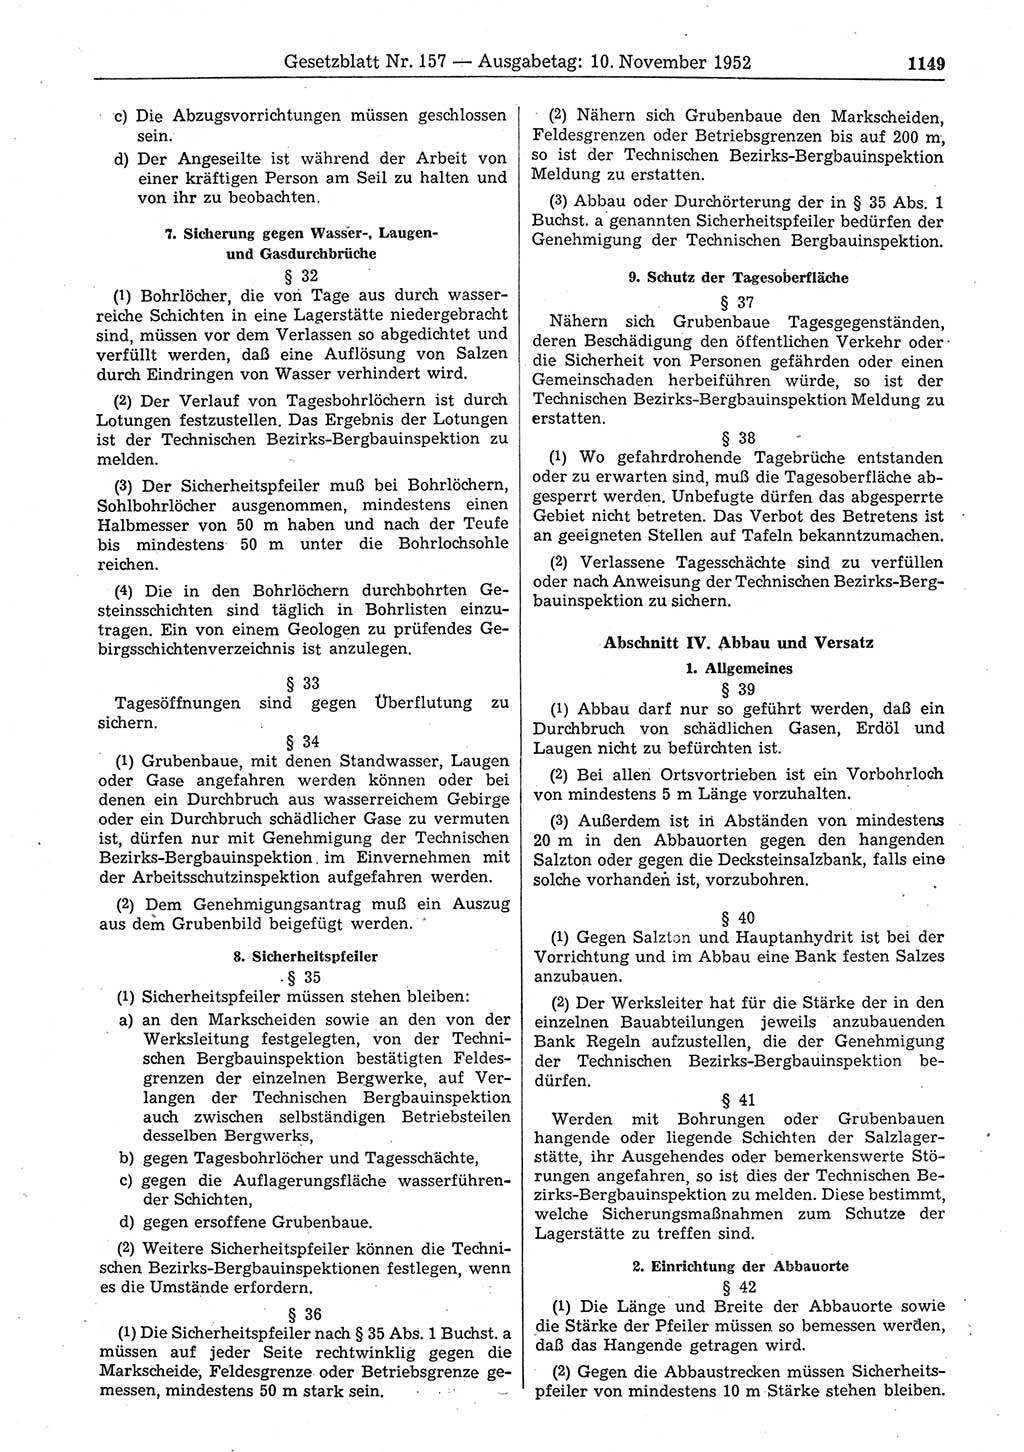 Gesetzblatt (GBl.) der Deutschen Demokratischen Republik (DDR) 1952, Seite 1149 (GBl. DDR 1952, S. 1149)